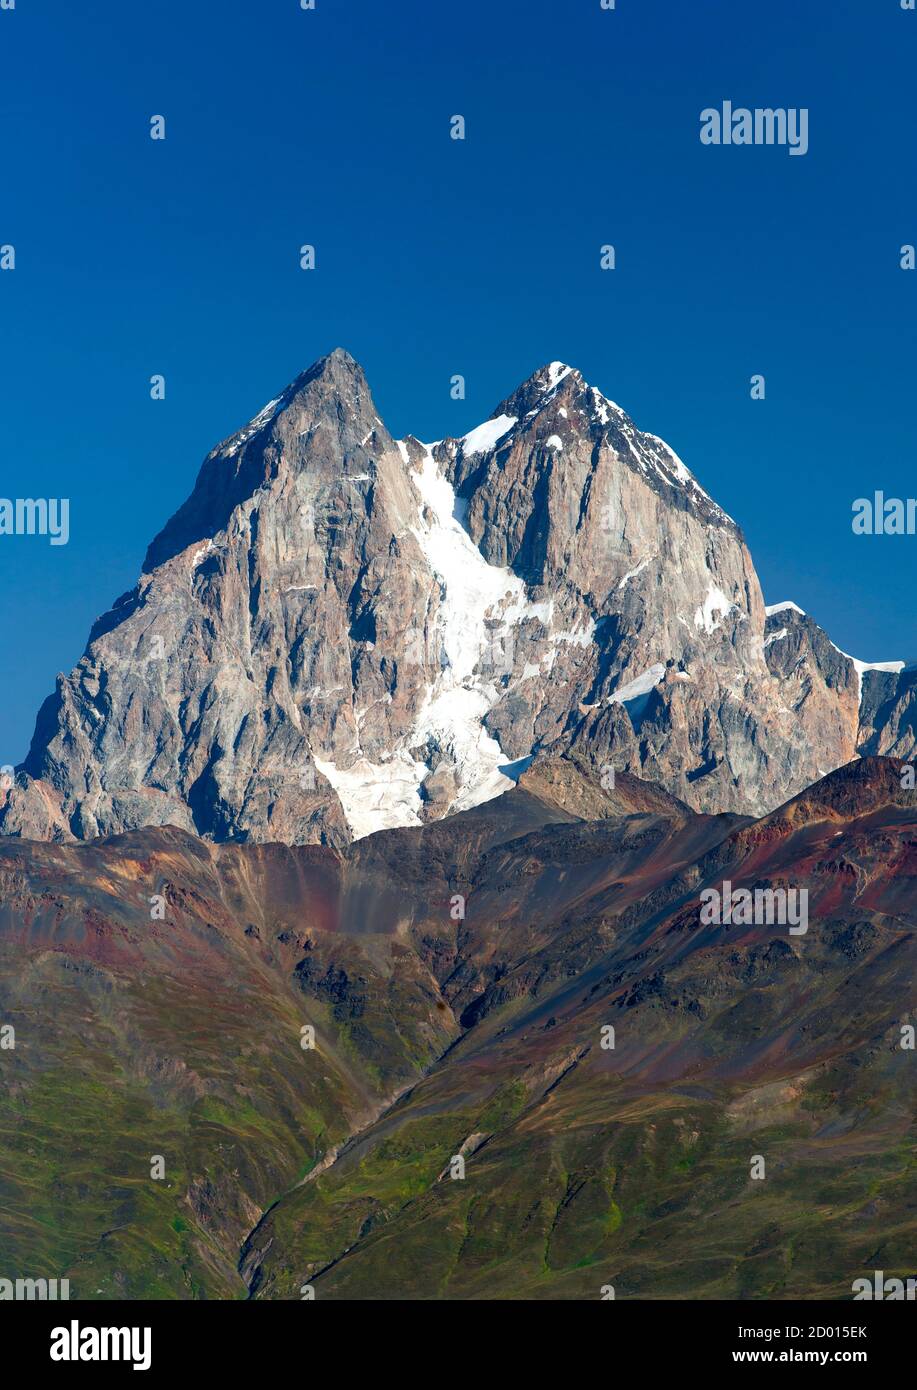 Los dos picos del Monte Ushba (4710m) en la región de Svaneti de las montañas del Cáucaso, en el noroeste de Georgia. Foto de stock